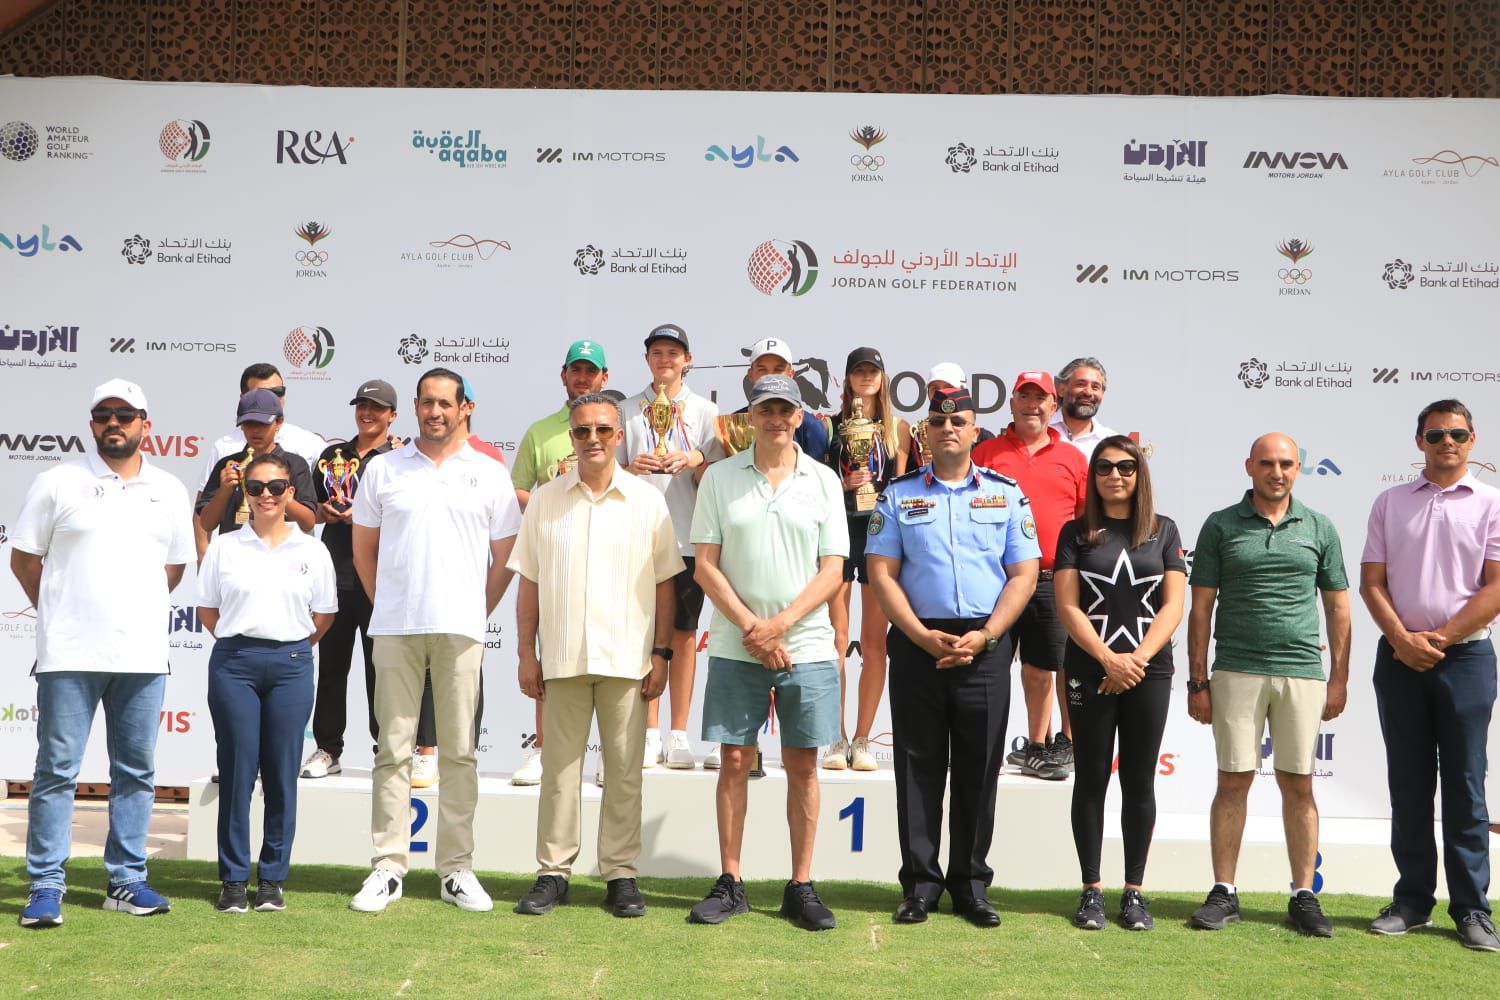 اللاعب التونسي الياس برهومي يظفر بلقب النسخة الثالثة والثلاثين من بطولة الأردن المفتوحة للجولف على ملاعب أيلة 